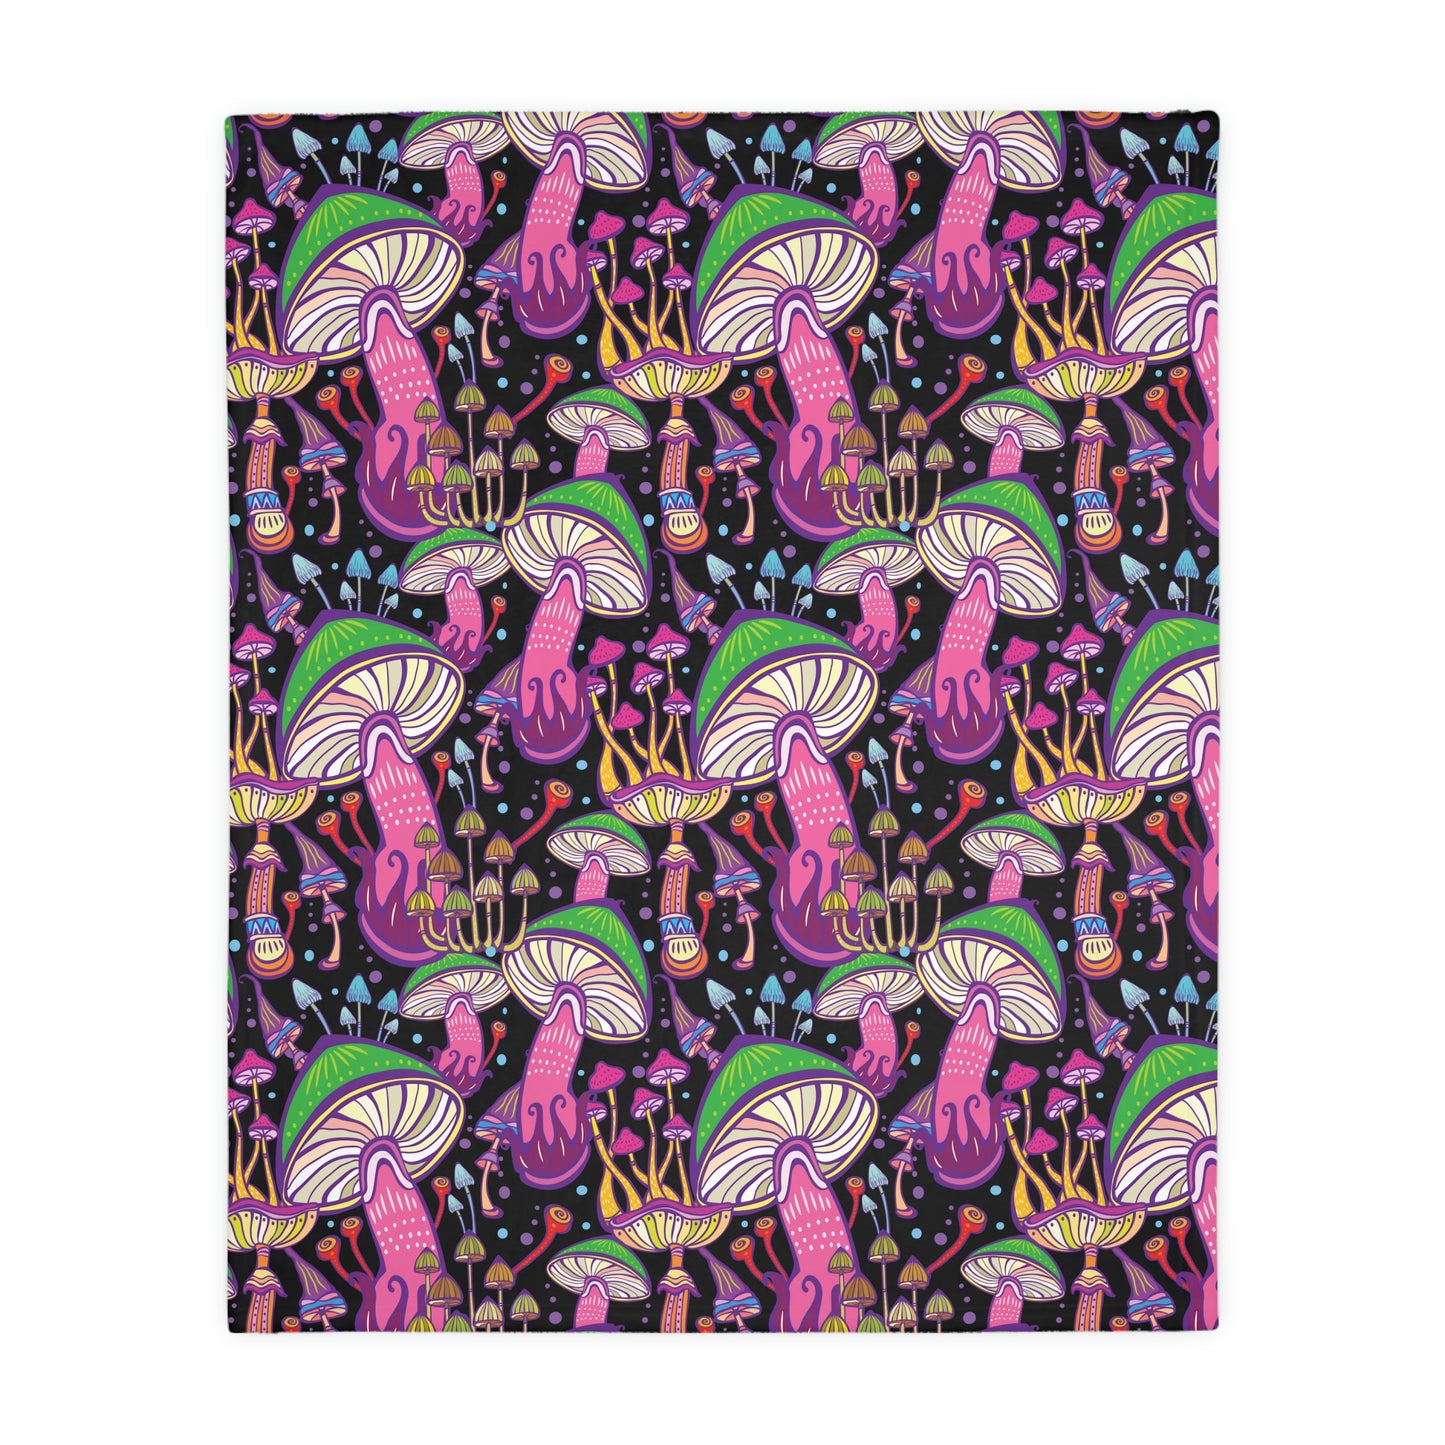 Super Mushrooms Velveteen Minky Blanket (Two-sided print)